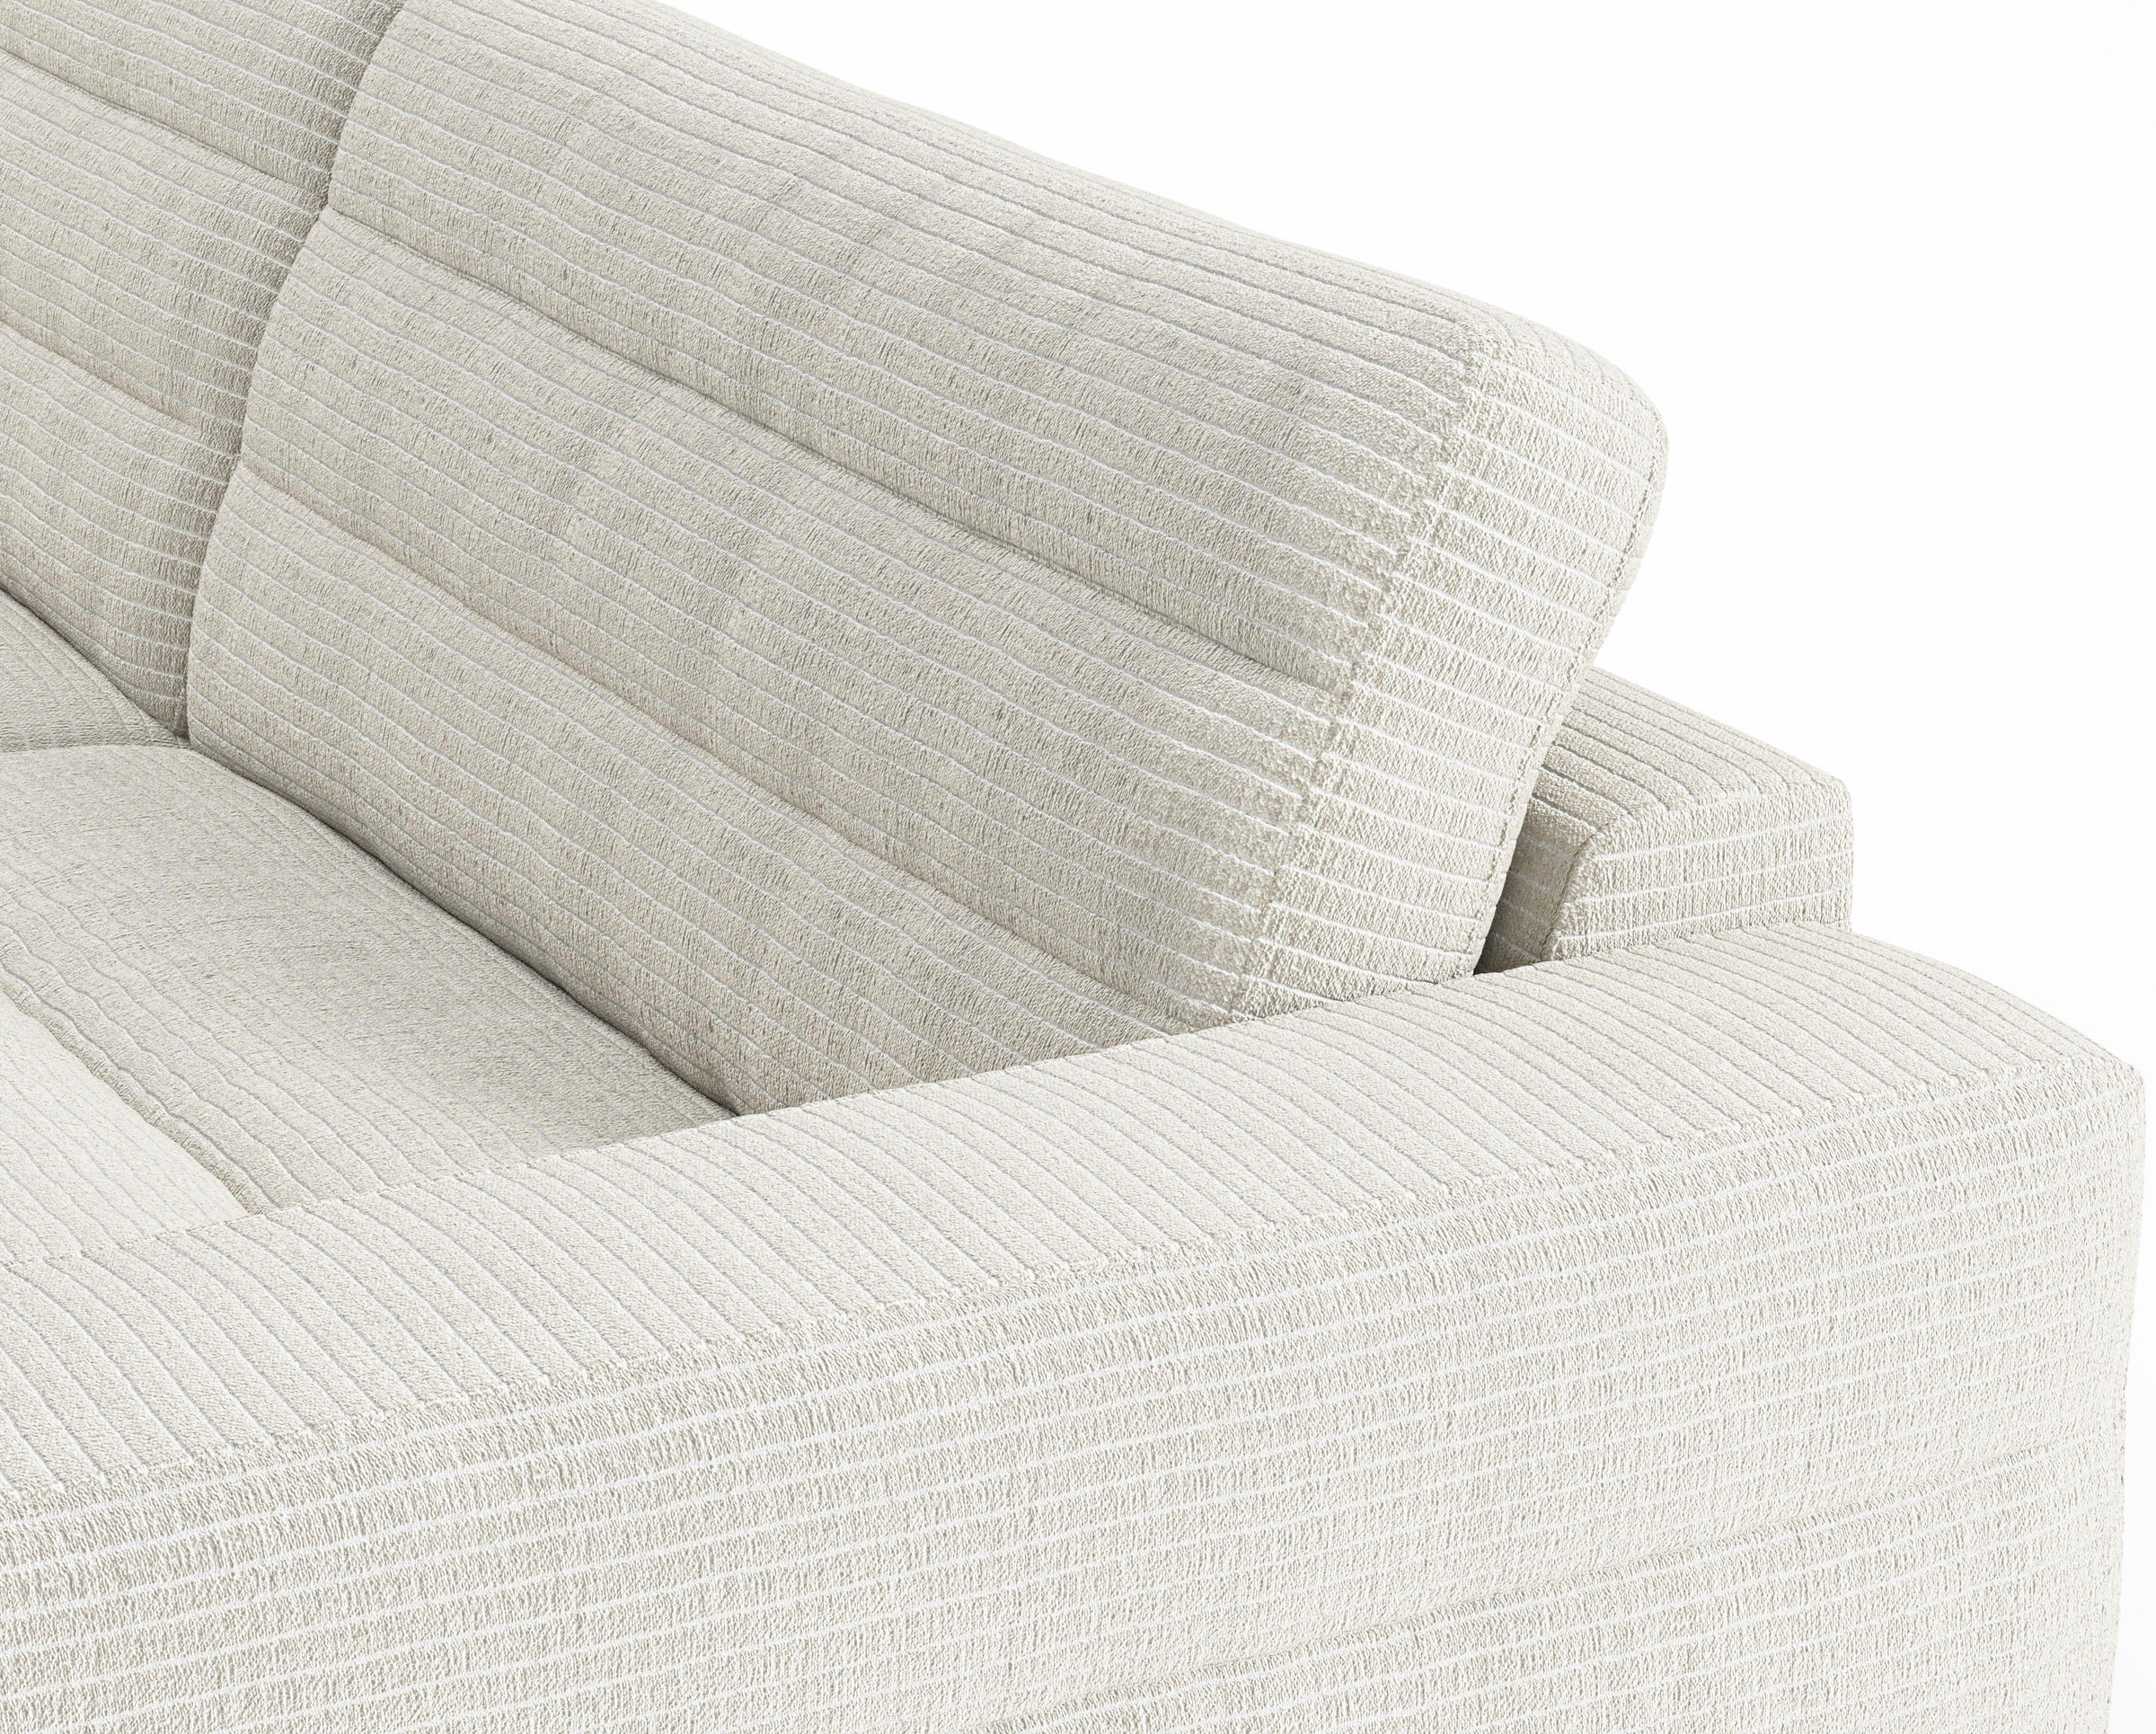 3C Candy Big-Sofa »Stripes«, Lose Rückenkissen, mit feiner Quersteppung